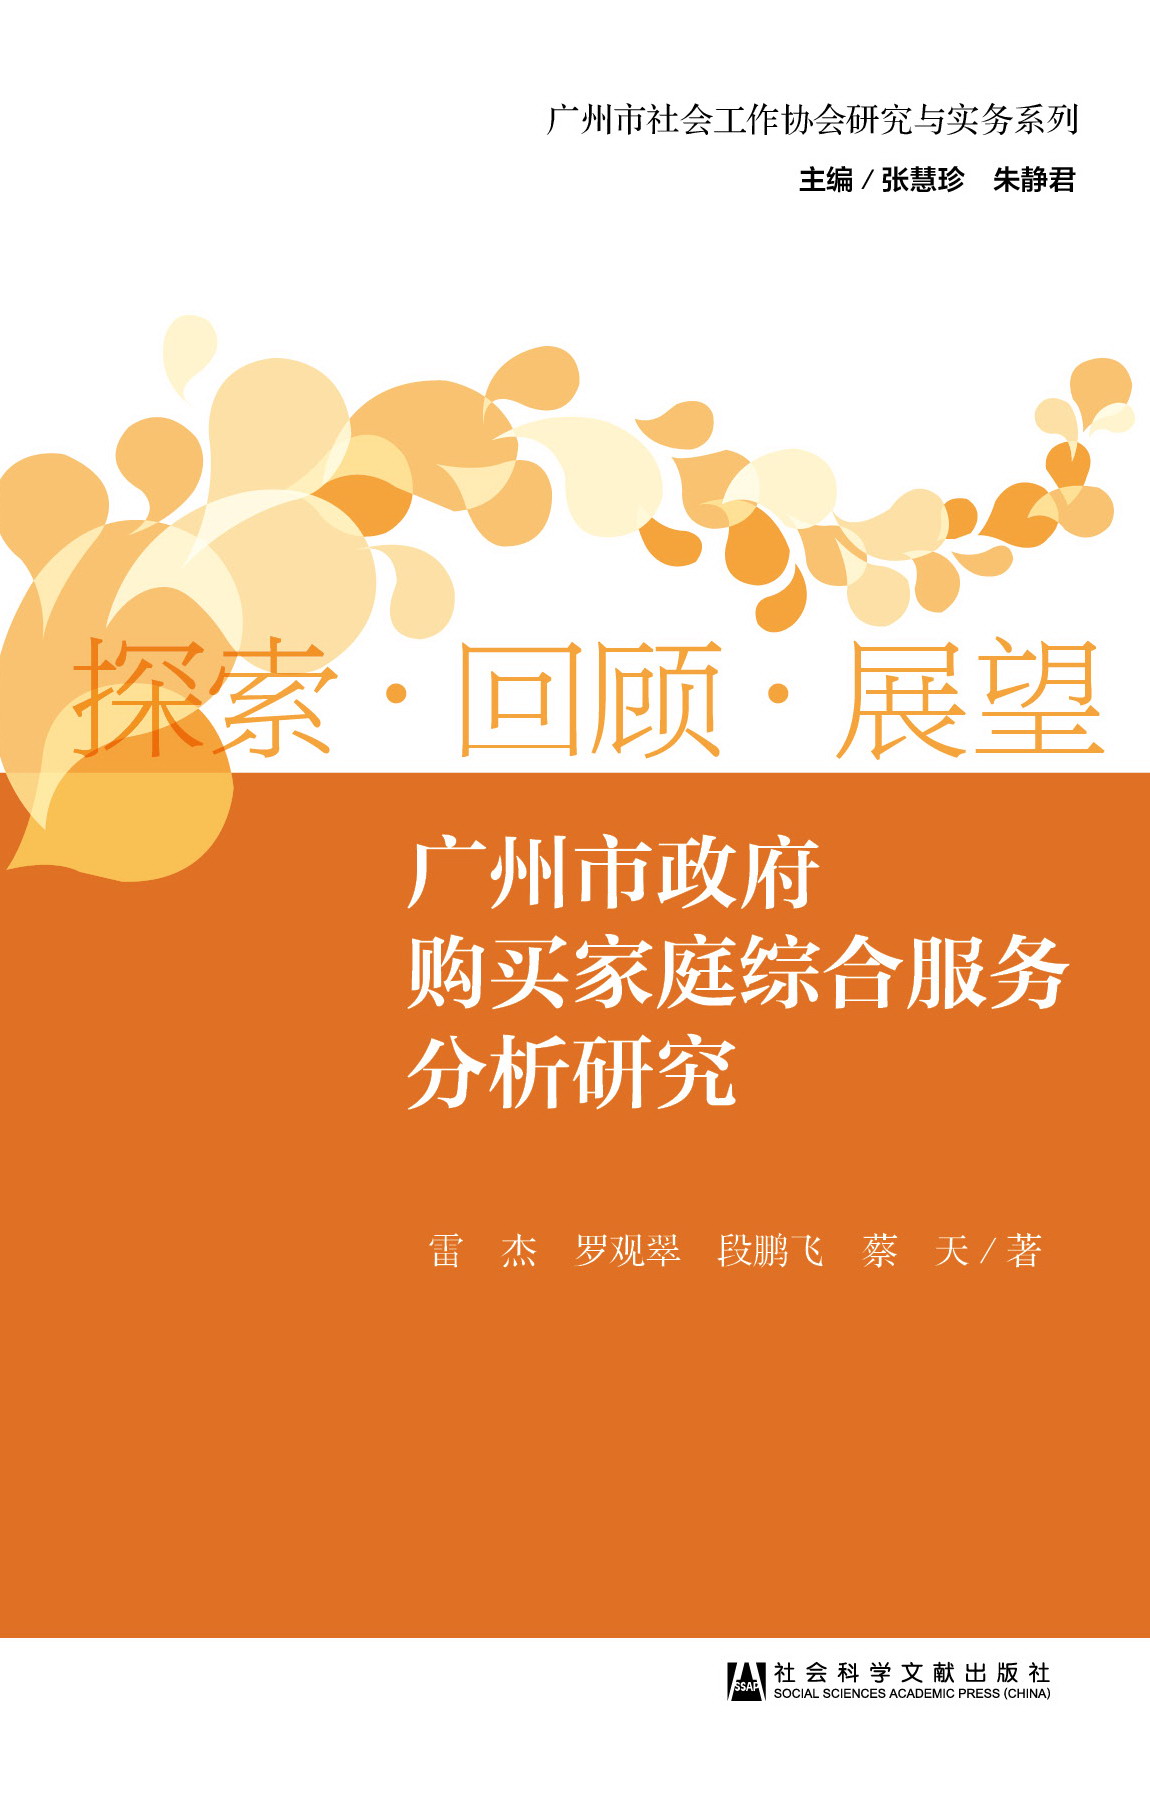 广州市政府购买家庭综合服务分析研究